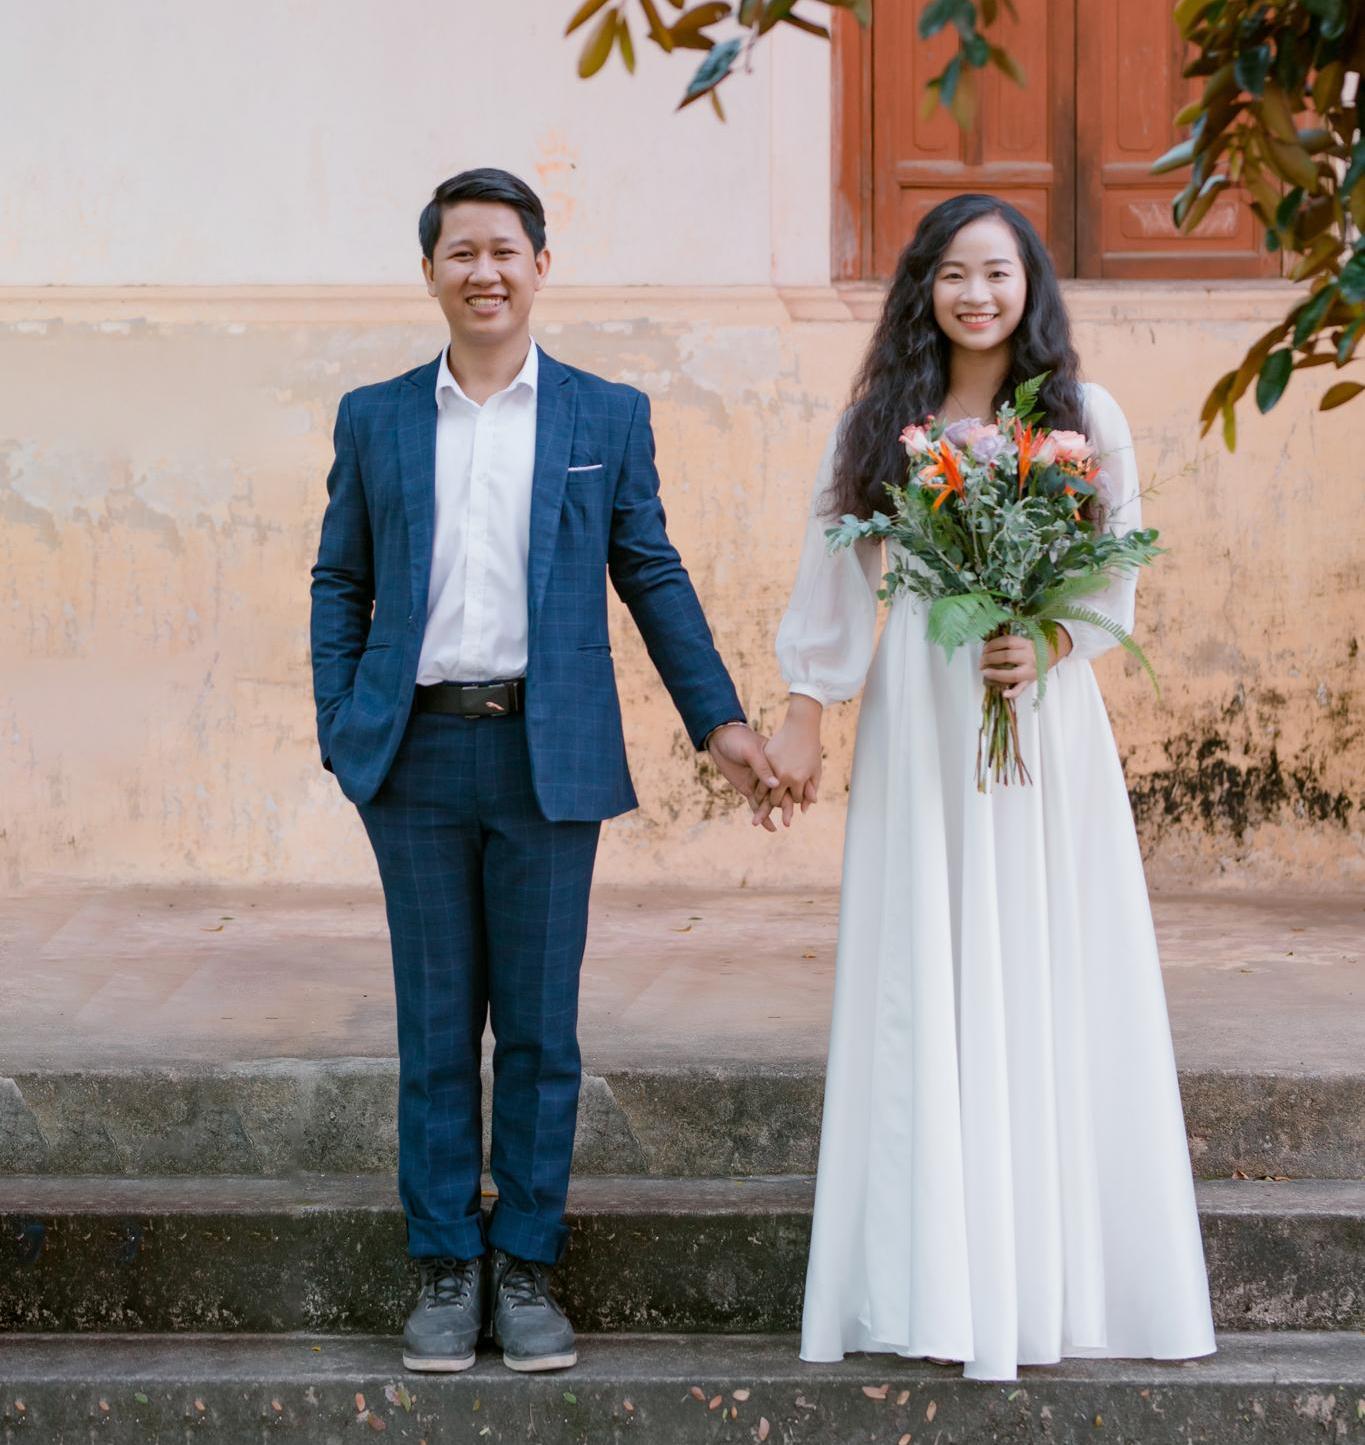 Cùng xem bộ ảnh của cặp vợ chồng khi đi khắp Việt Nam, nắm tay nhau khám phá những địa danh đẹp nhất, tạo nên kỷ niệm đáng nhớ và thêm sự gắn kết và tình yêu trong đời sống hôn nhân.